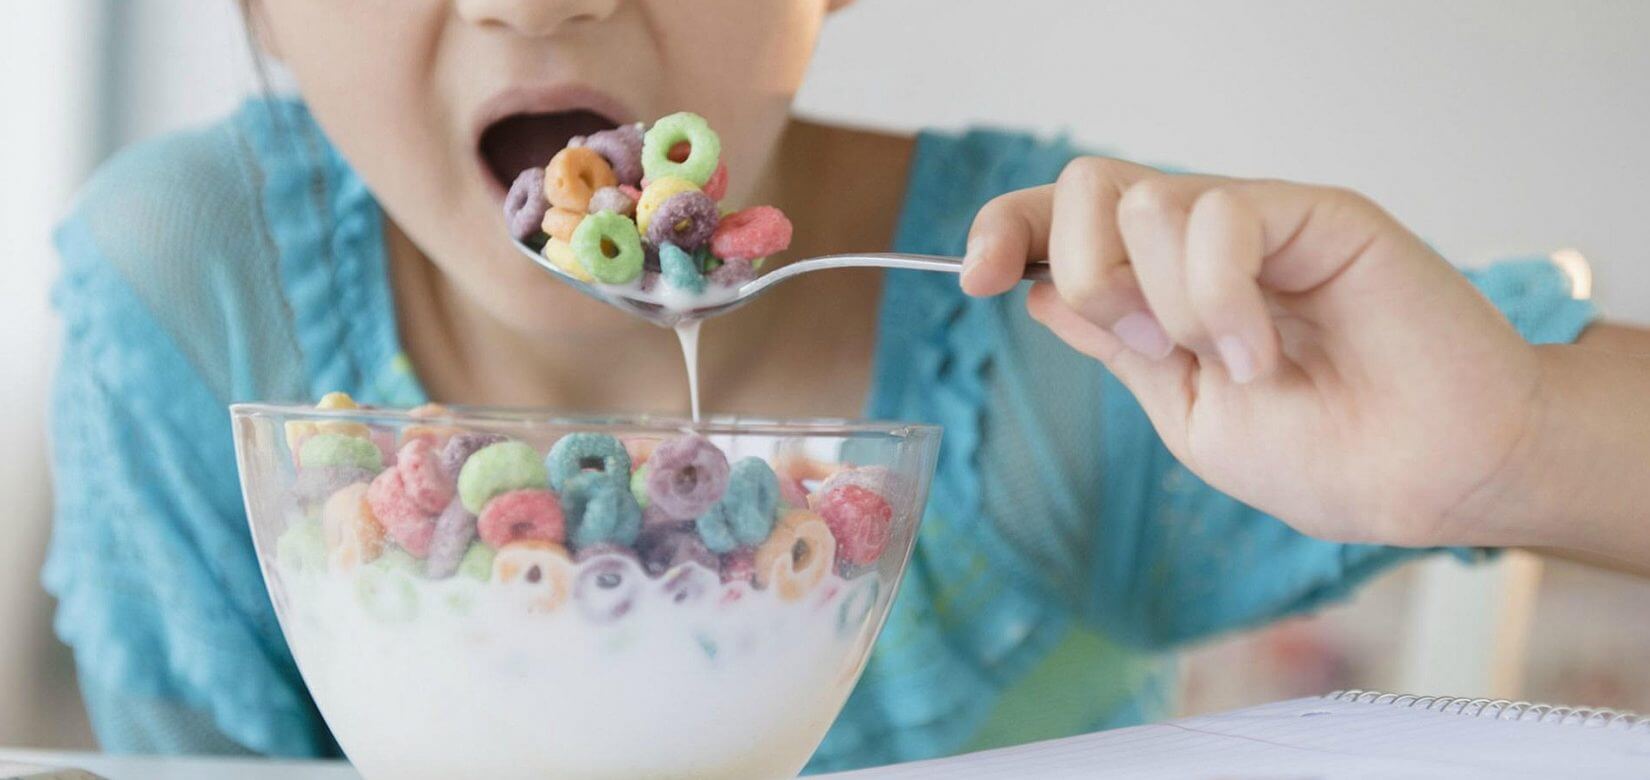 Έρευνα: Τεράστιες οι ποσότητες ζάχαρης που καταναλώνουν τα παιδιά στη Βρετανία!